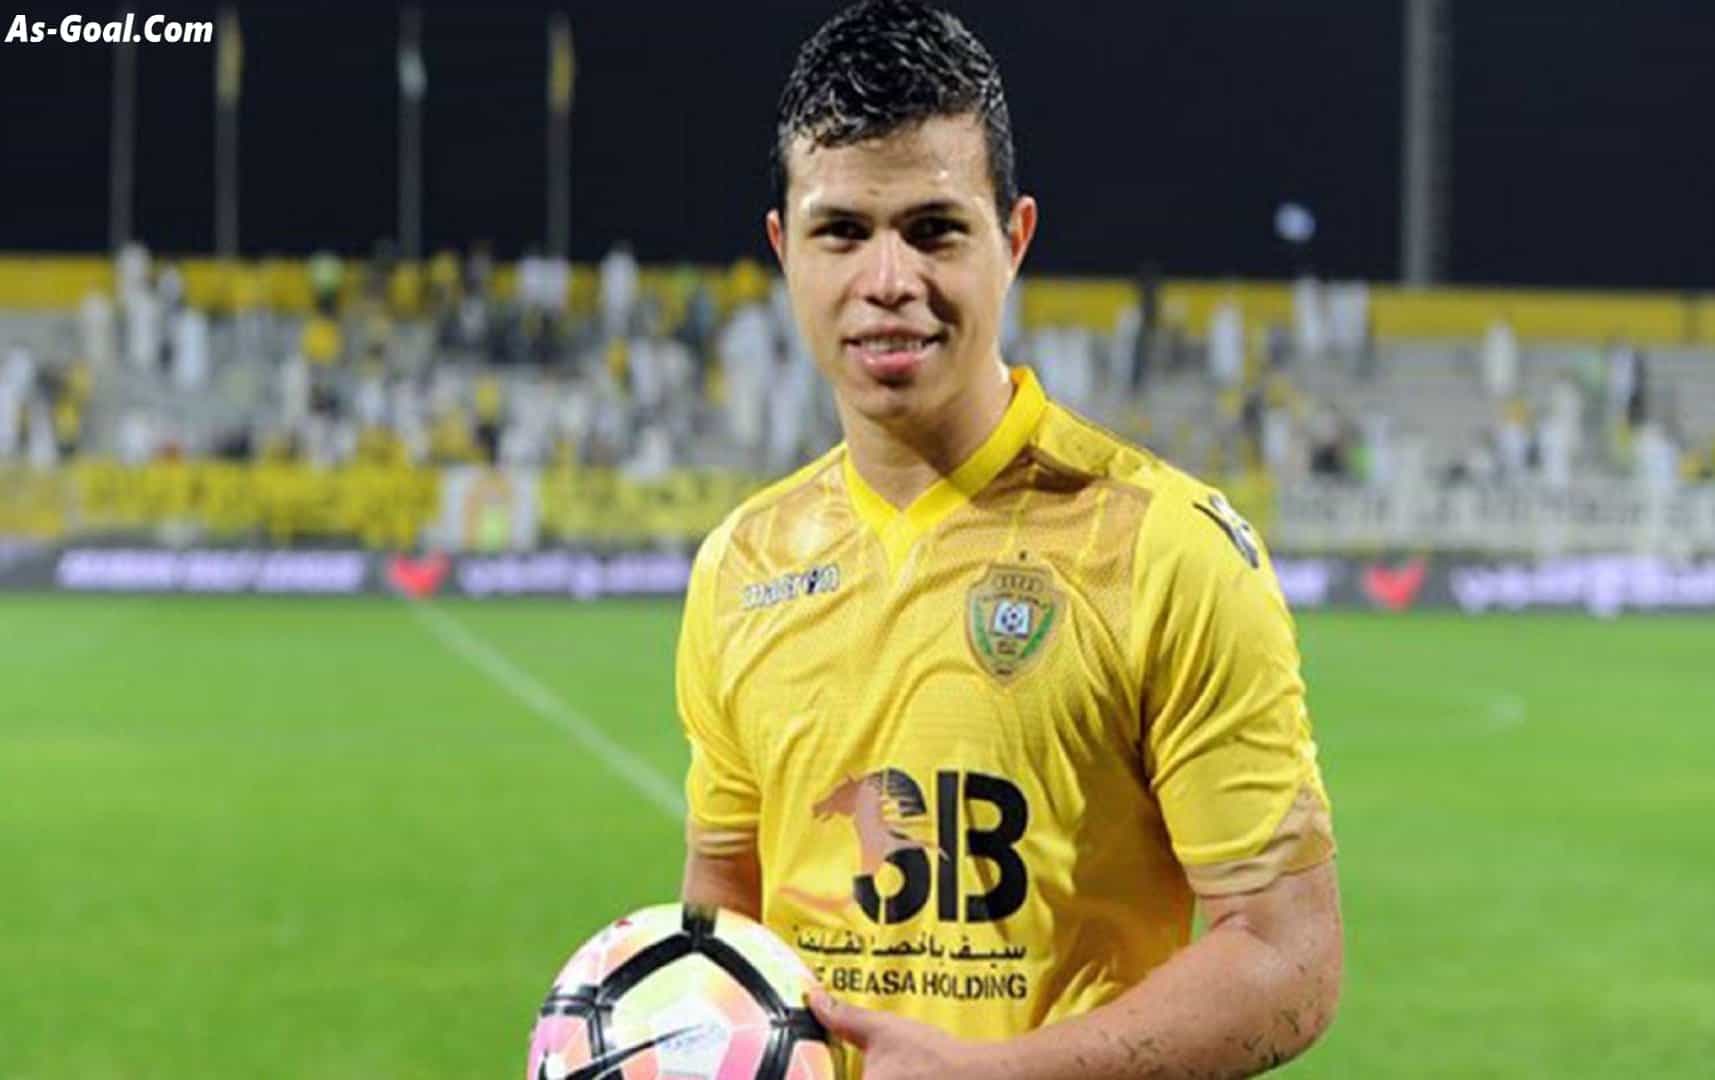 العين الإماراتي يوضح حقيقة مفاوضاته مع "فابيو ليما" | AS Goal